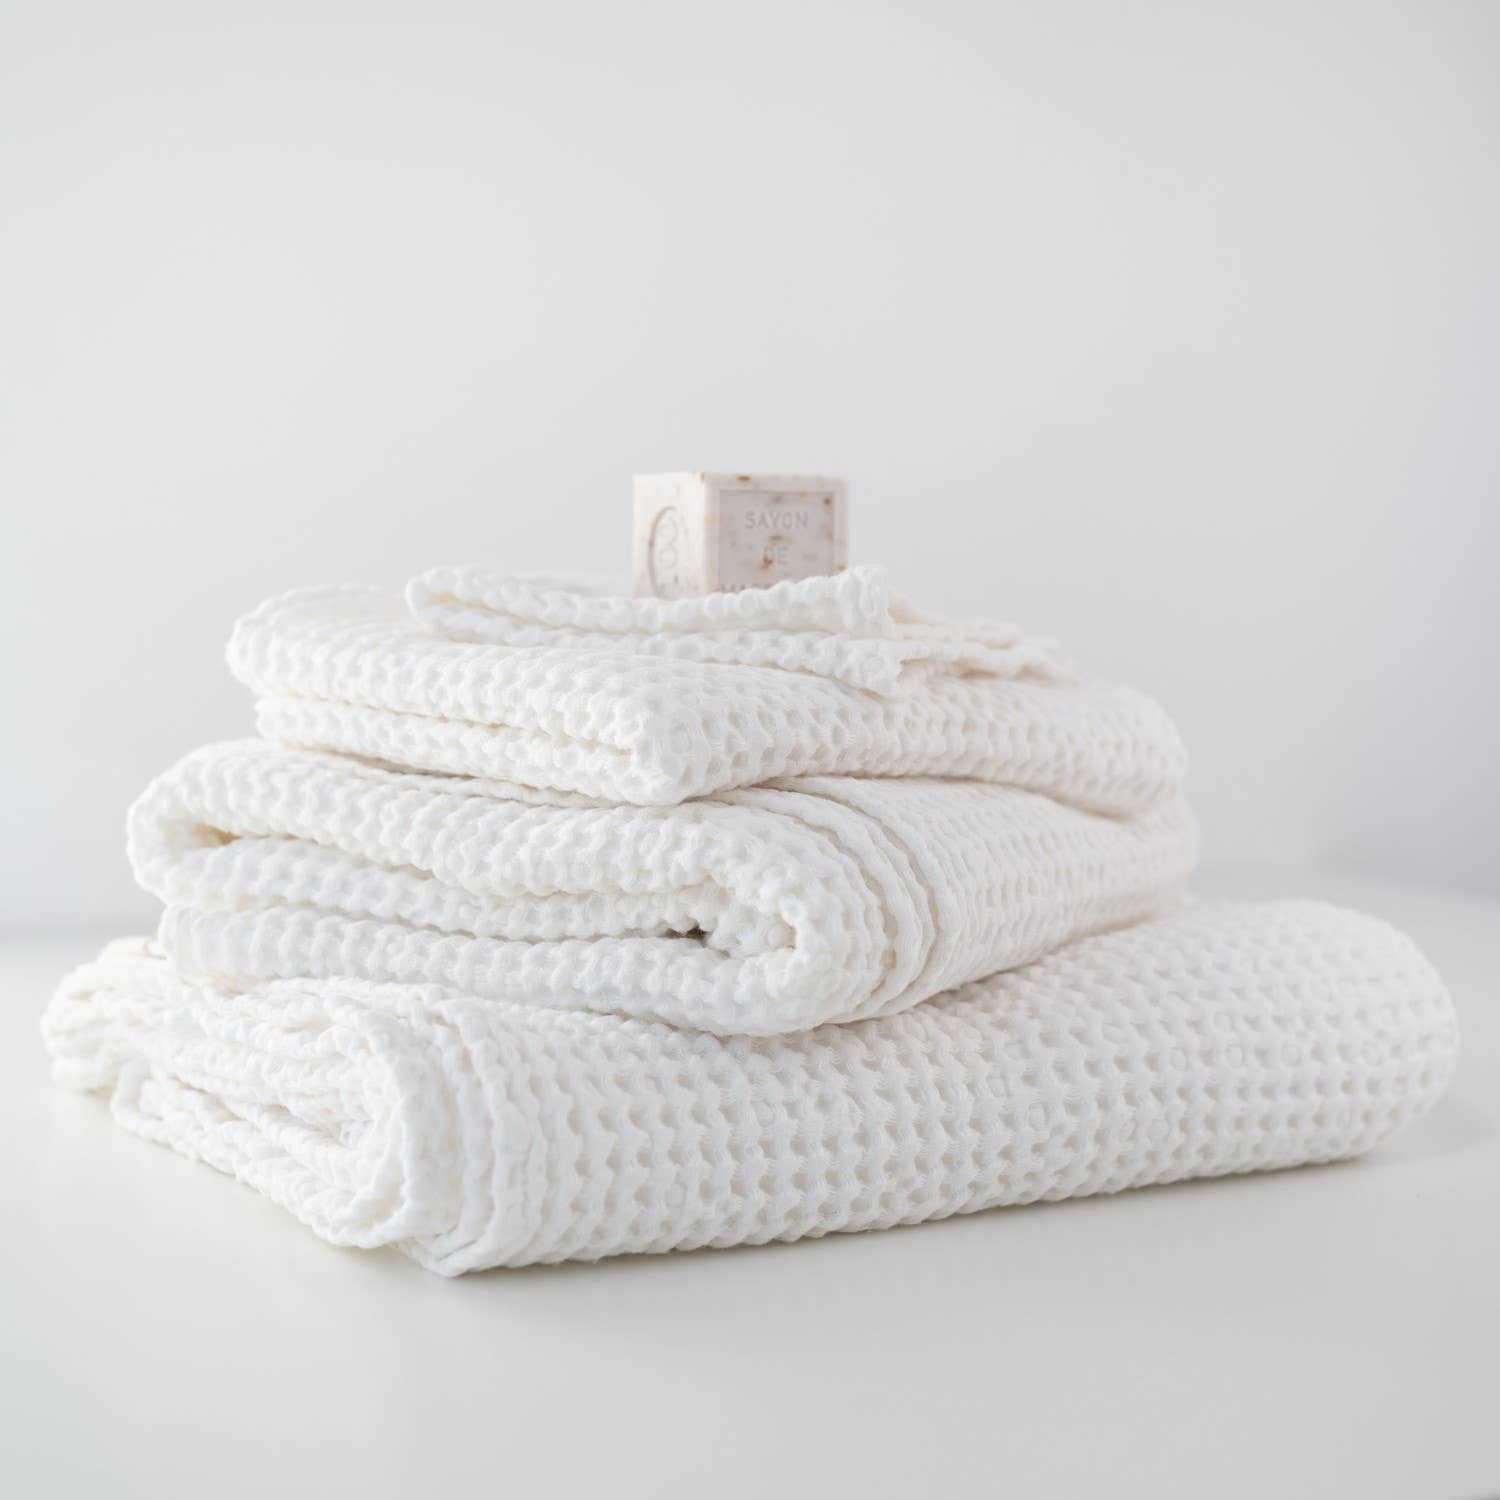 Linen Bath Towels in Waffle Weave